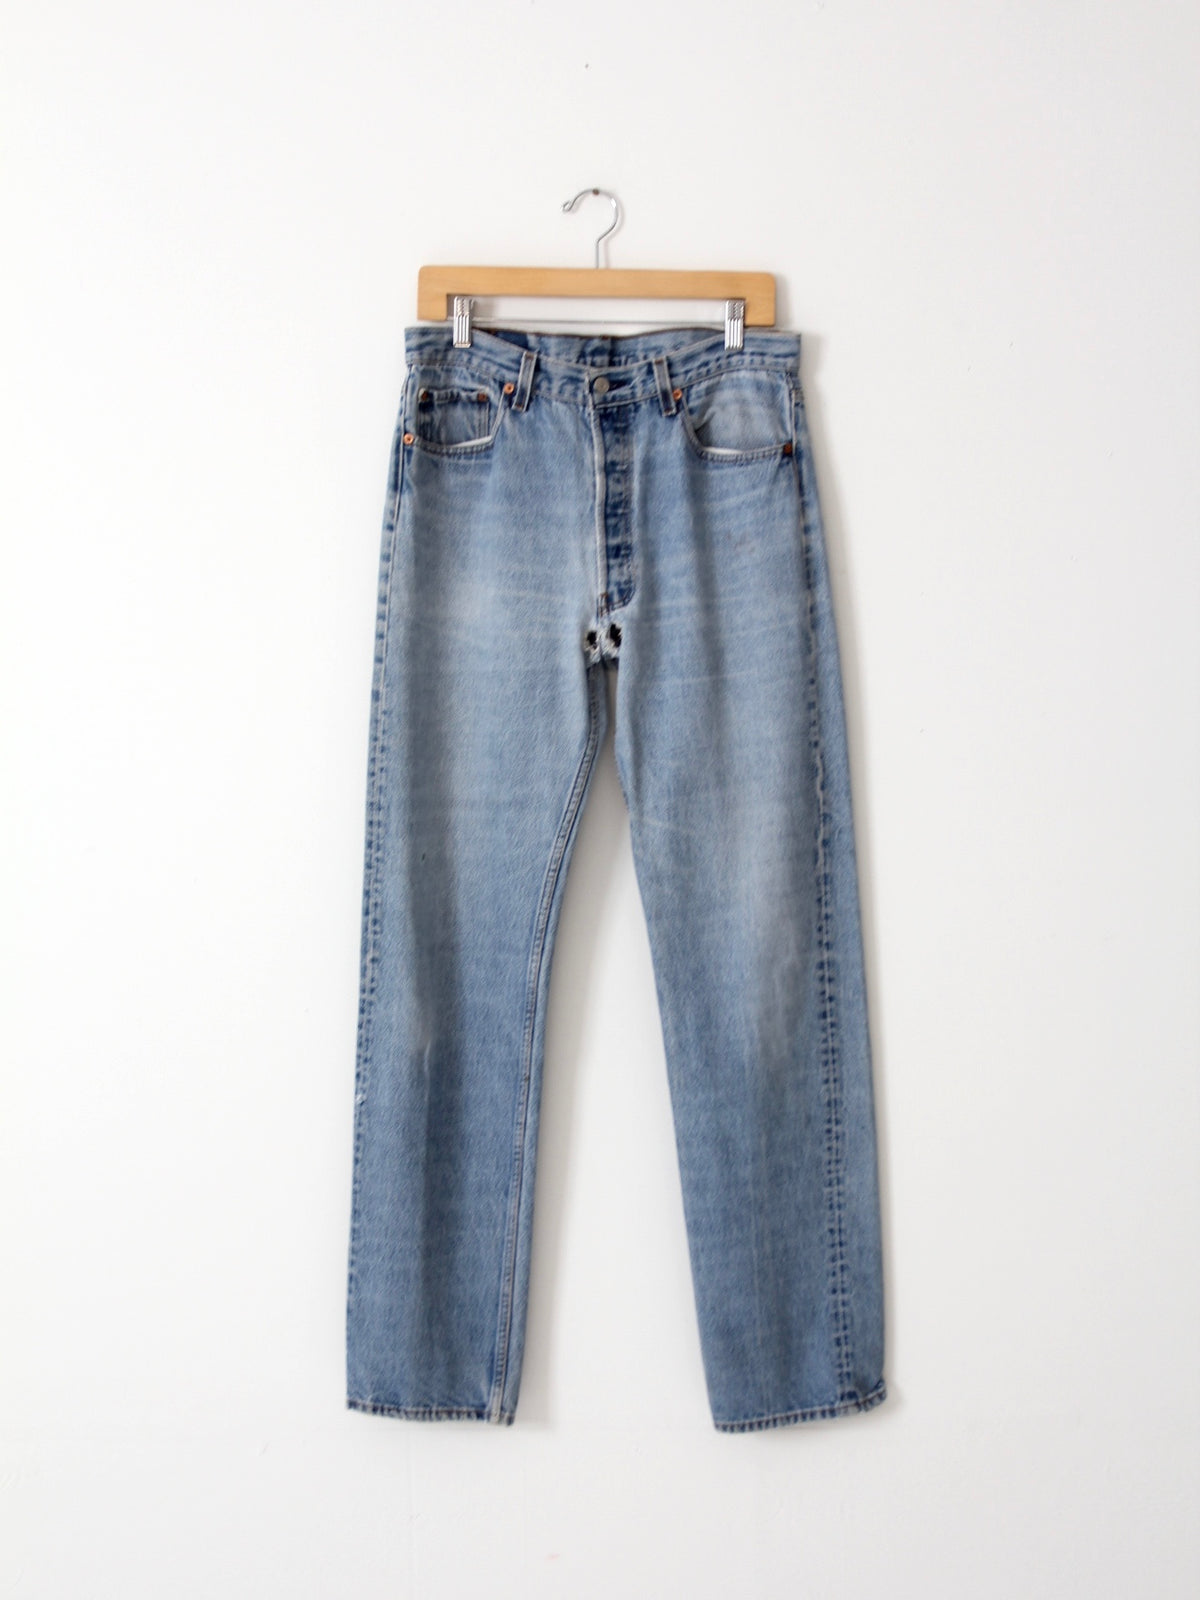 vintage Levis 501 jeans, 33 x 33 – 86 Vintage